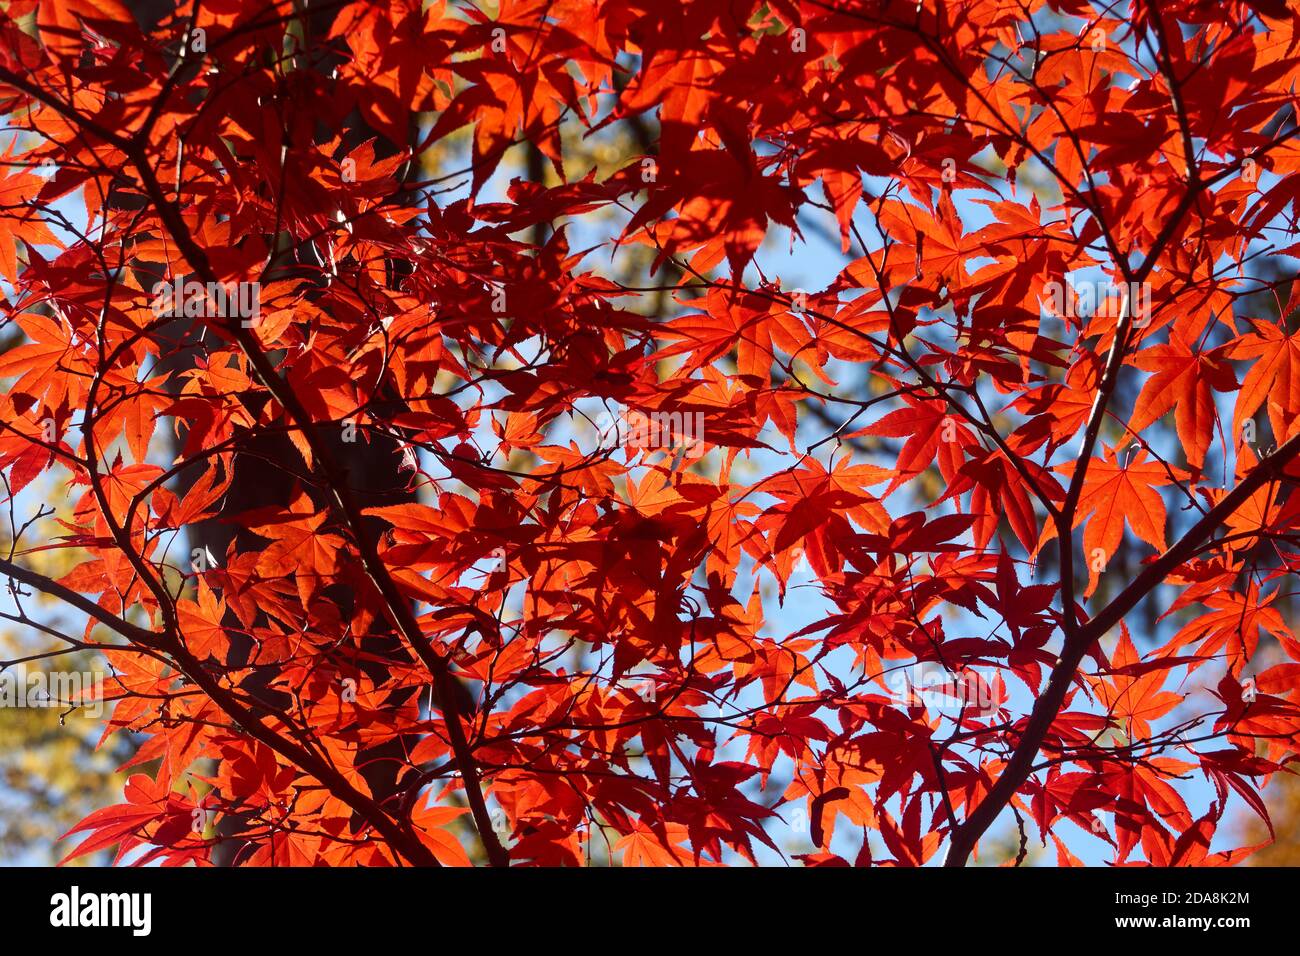 Hinterleuchtete rote japanische Ahorn (Acer palmatum) Baum Blätter im Herbst, Vancouver, British Columbia, Kanada Stockfoto